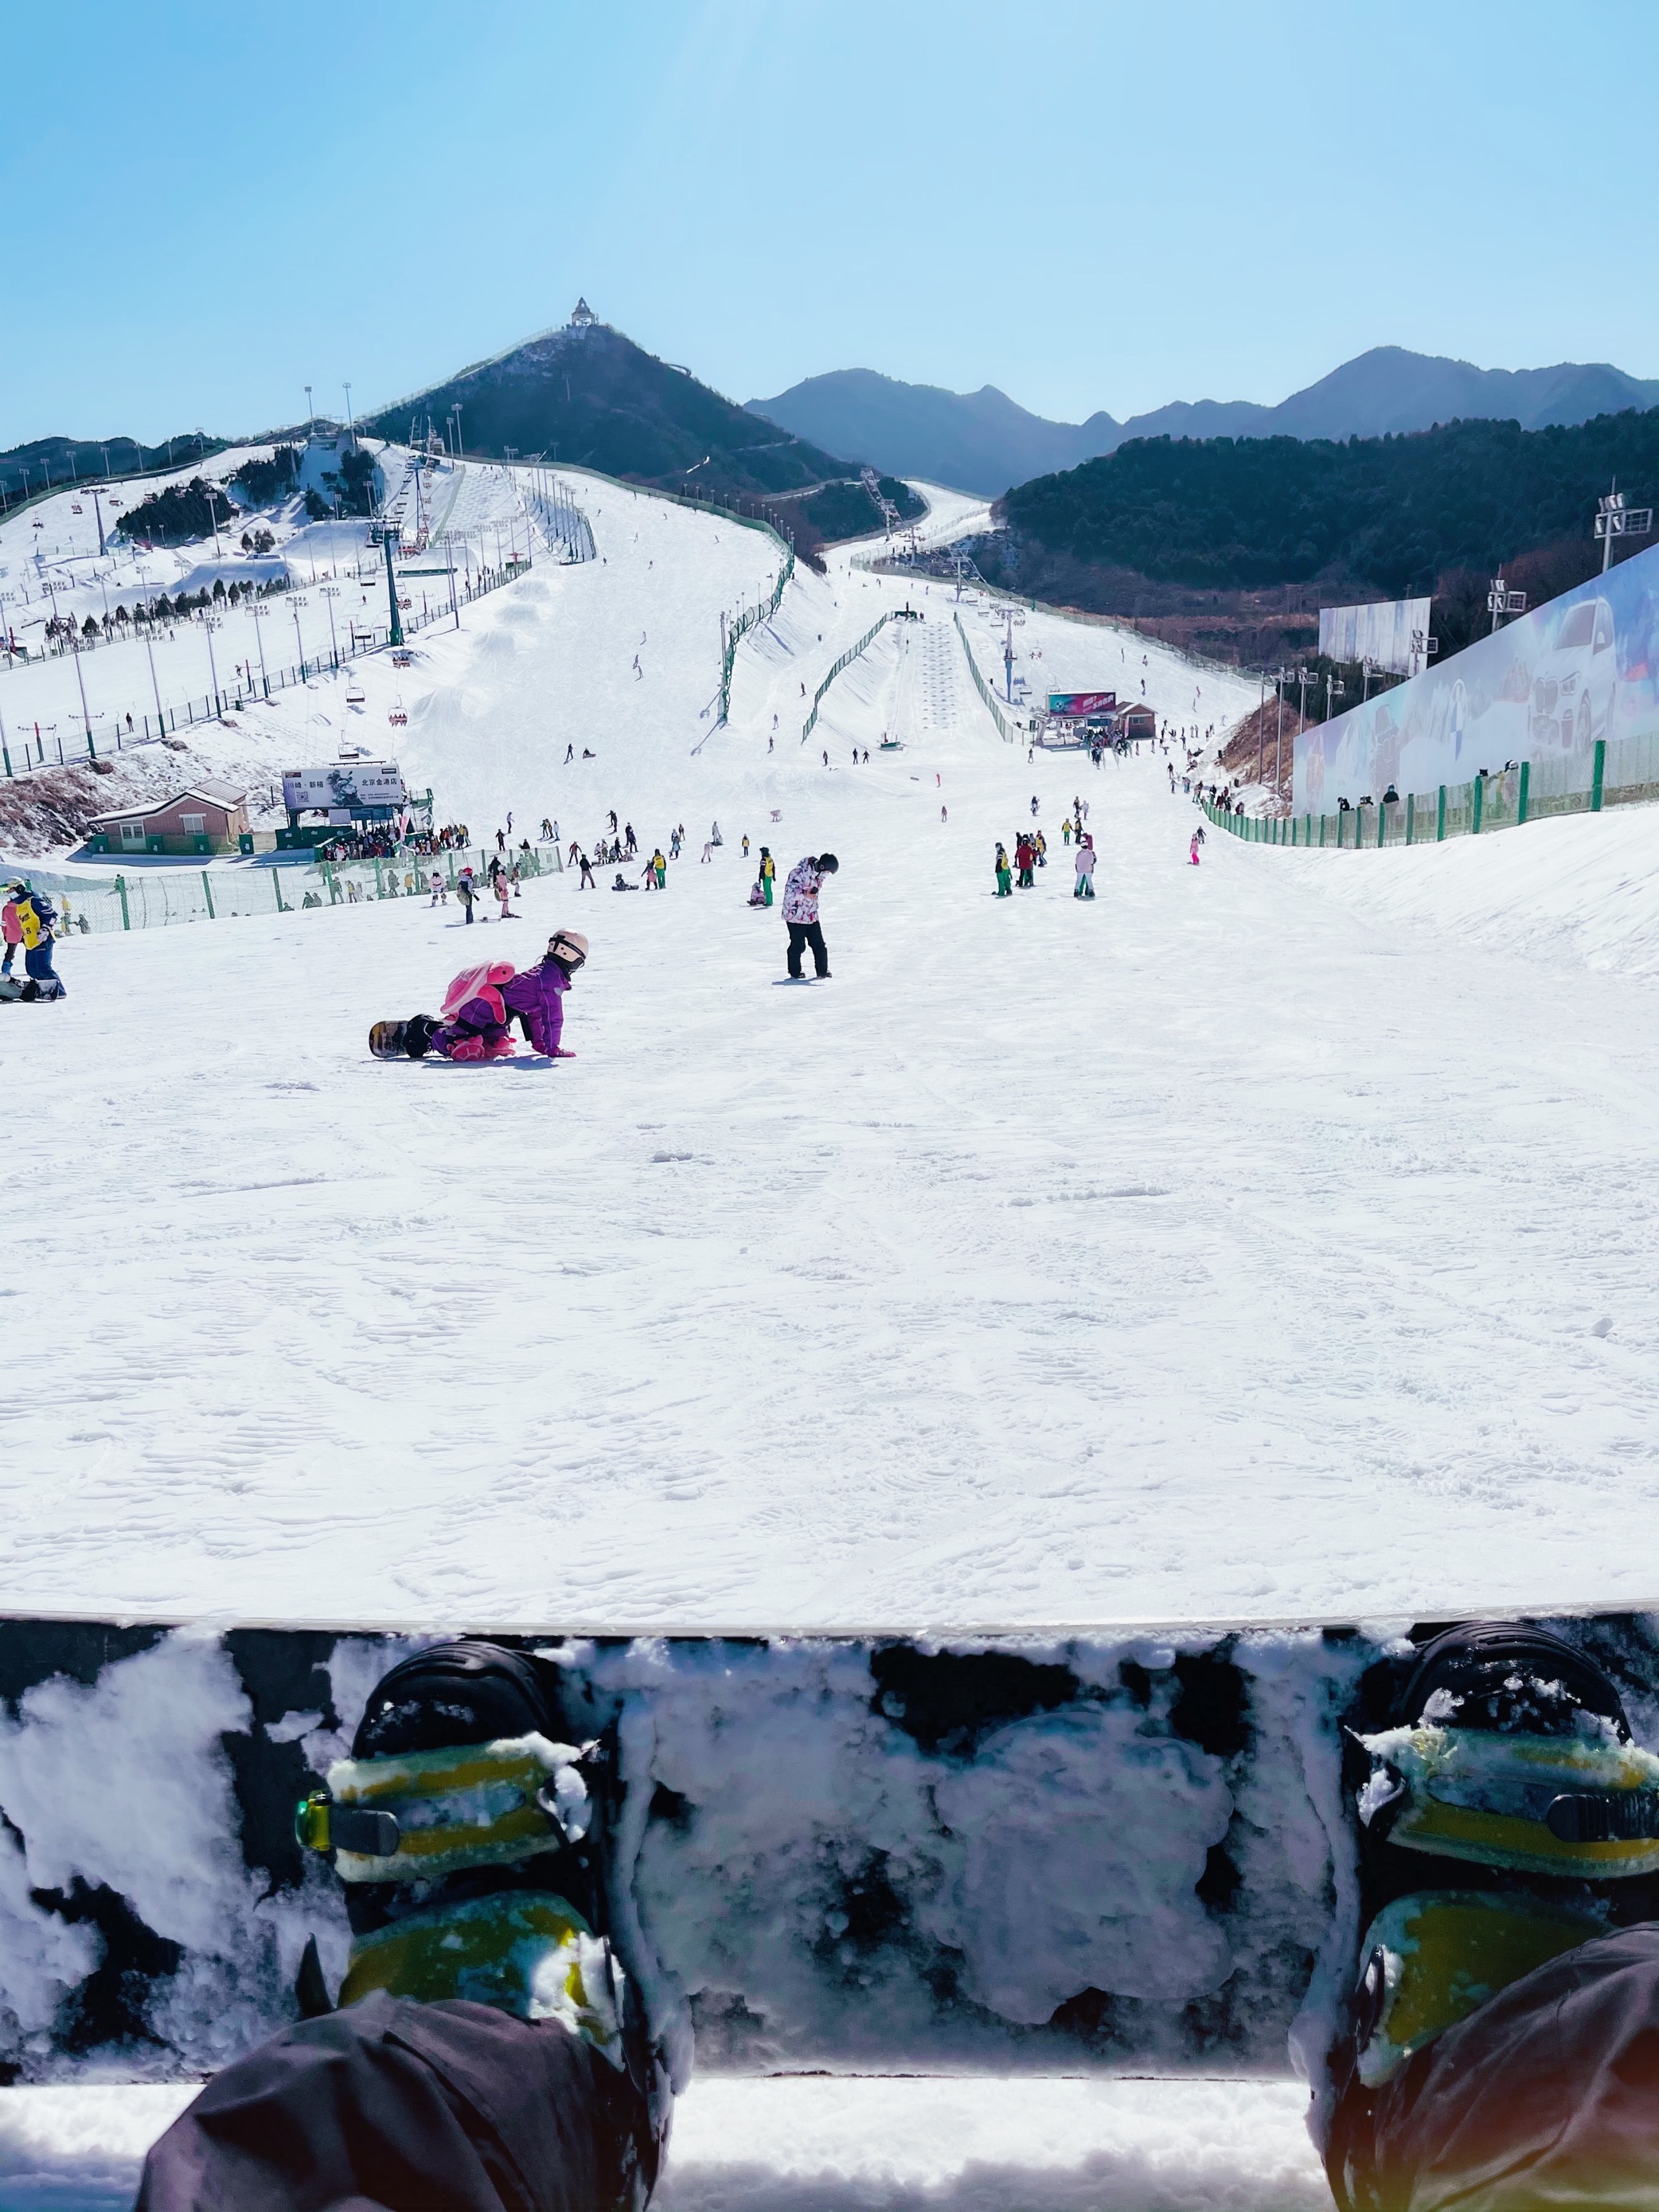 【携程攻略】密云区南山滑雪场适合情侣出游旅游吗,南山滑雪场情侣